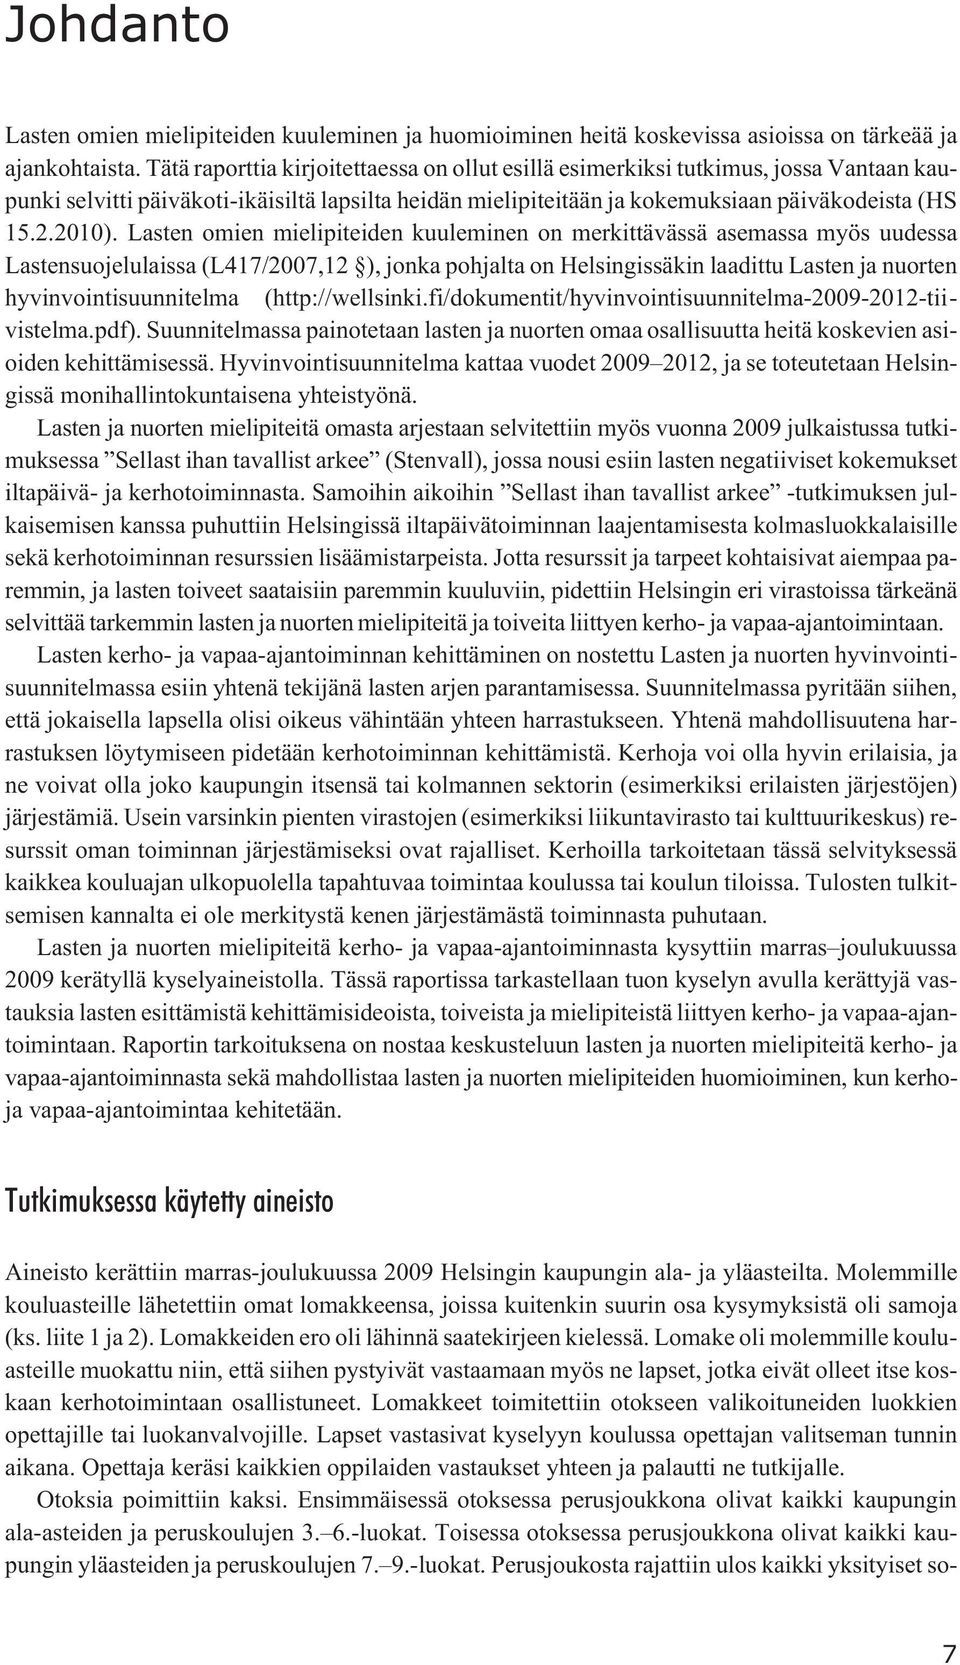 Lasten omien mielipiteiden kuuleminen on merkittävässä asemassa myös uudessa Lastensuojelulaissa (L417/2007,12 ), jonka pohjalta on Helsingissäkin laadittu Lasten ja nuorten hyvinvointisuunnitelma